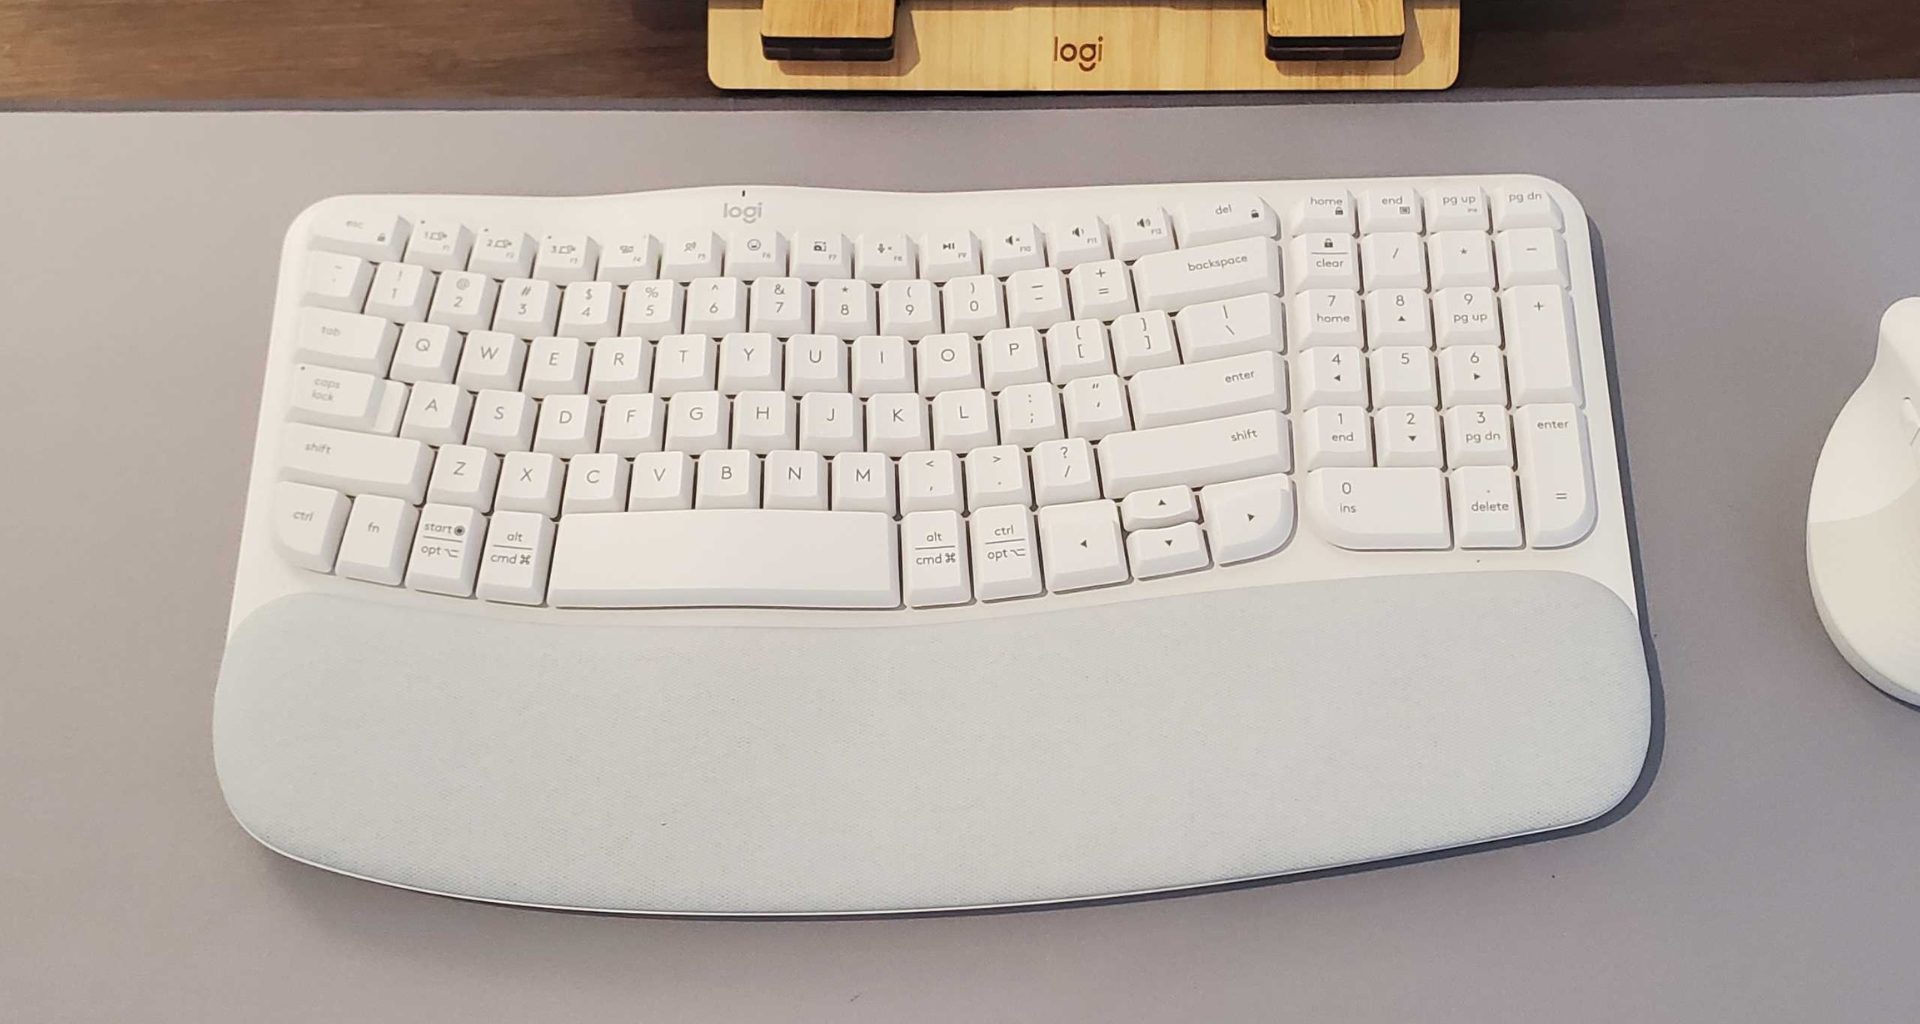 Review: teclado logitech wave keys entrega conforto e praticidade. Com apoio para as mãos que traz o conforto para quem trabalha por várias, horas, modelo tem bateria para três anos e pode ser encontrado por menos de r$ 500